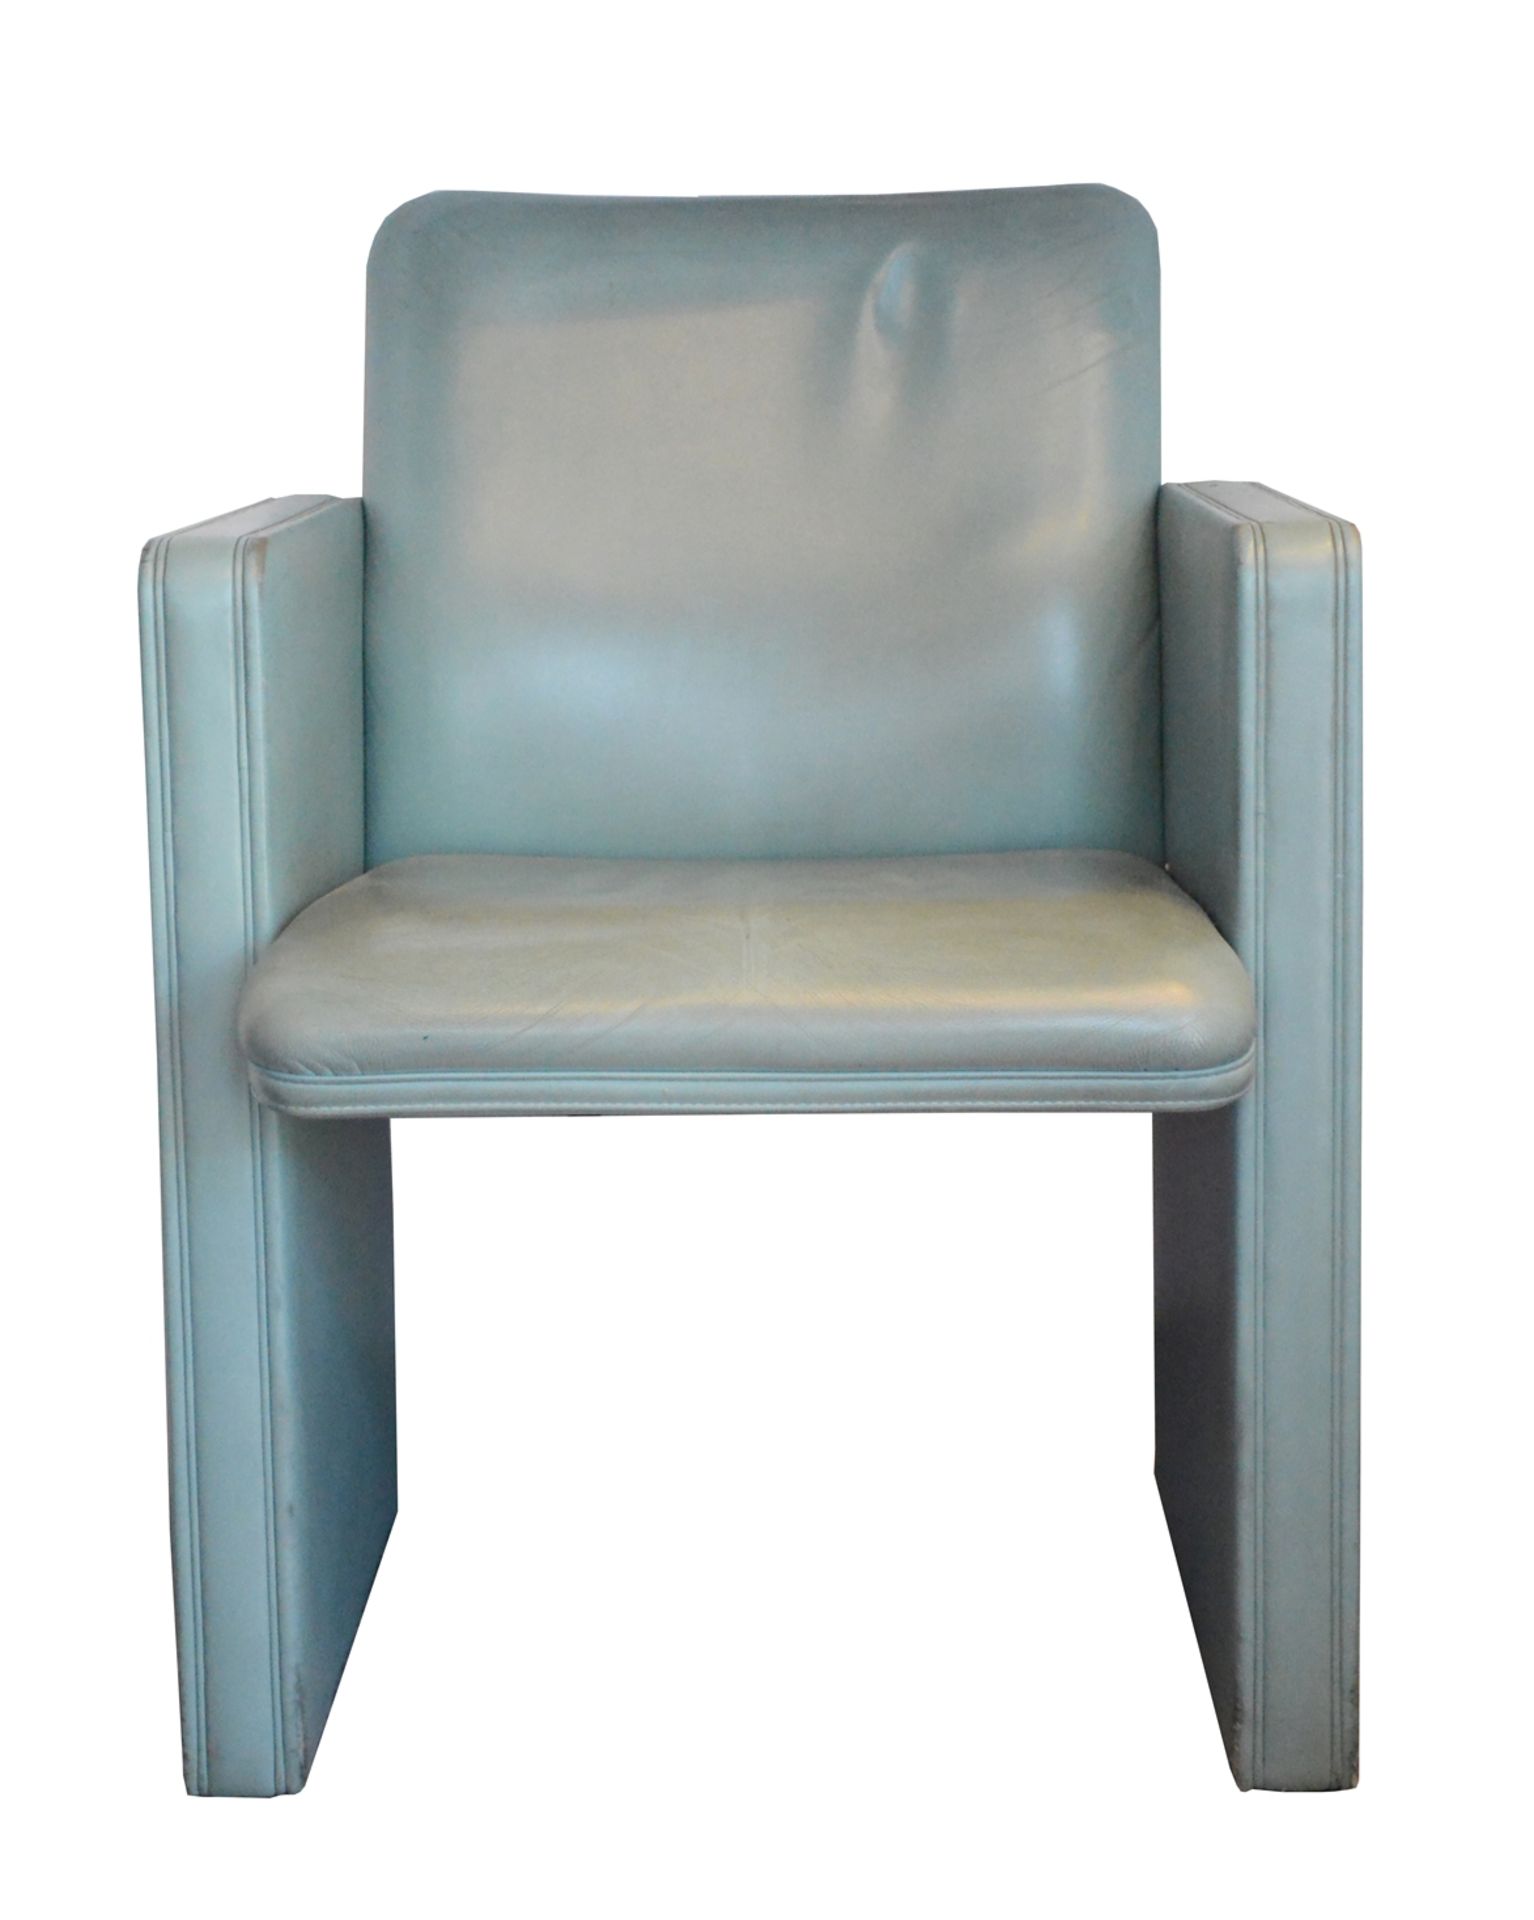 Zwei Sessel, Poltrona Frau, Tito Agnoli, graugrün, 83x60x53cm, Sitzhöhe 47cmTwo armchairs, - Bild 3 aus 4